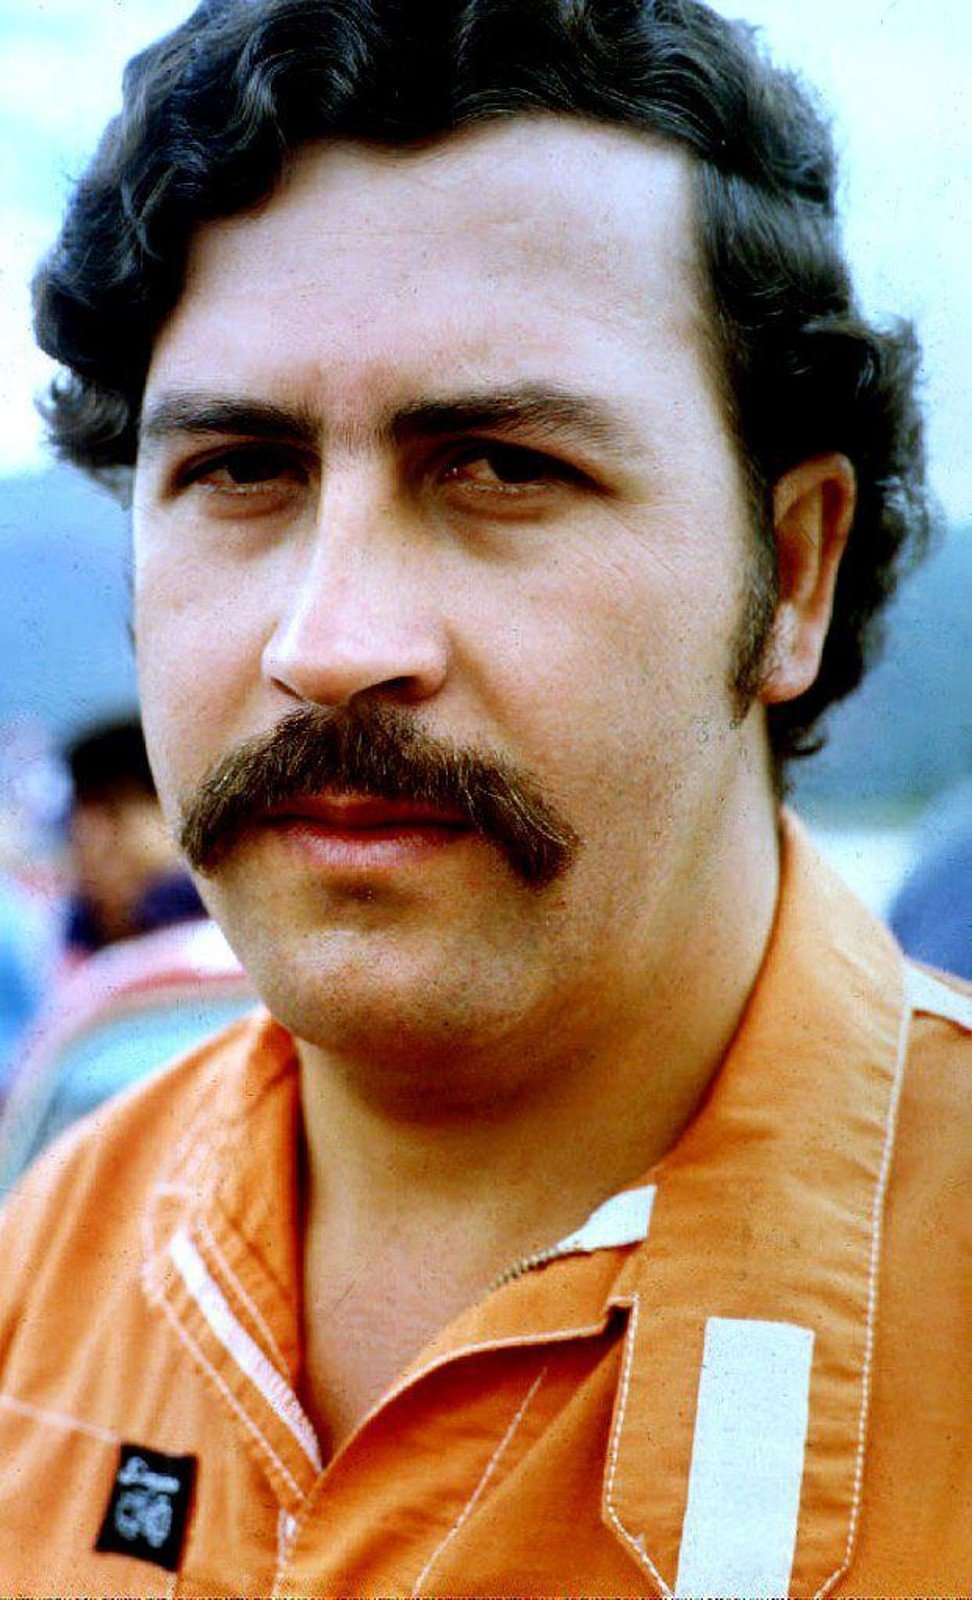 Medellin drug cartel leader Pablo Escobar. File photo: AFP